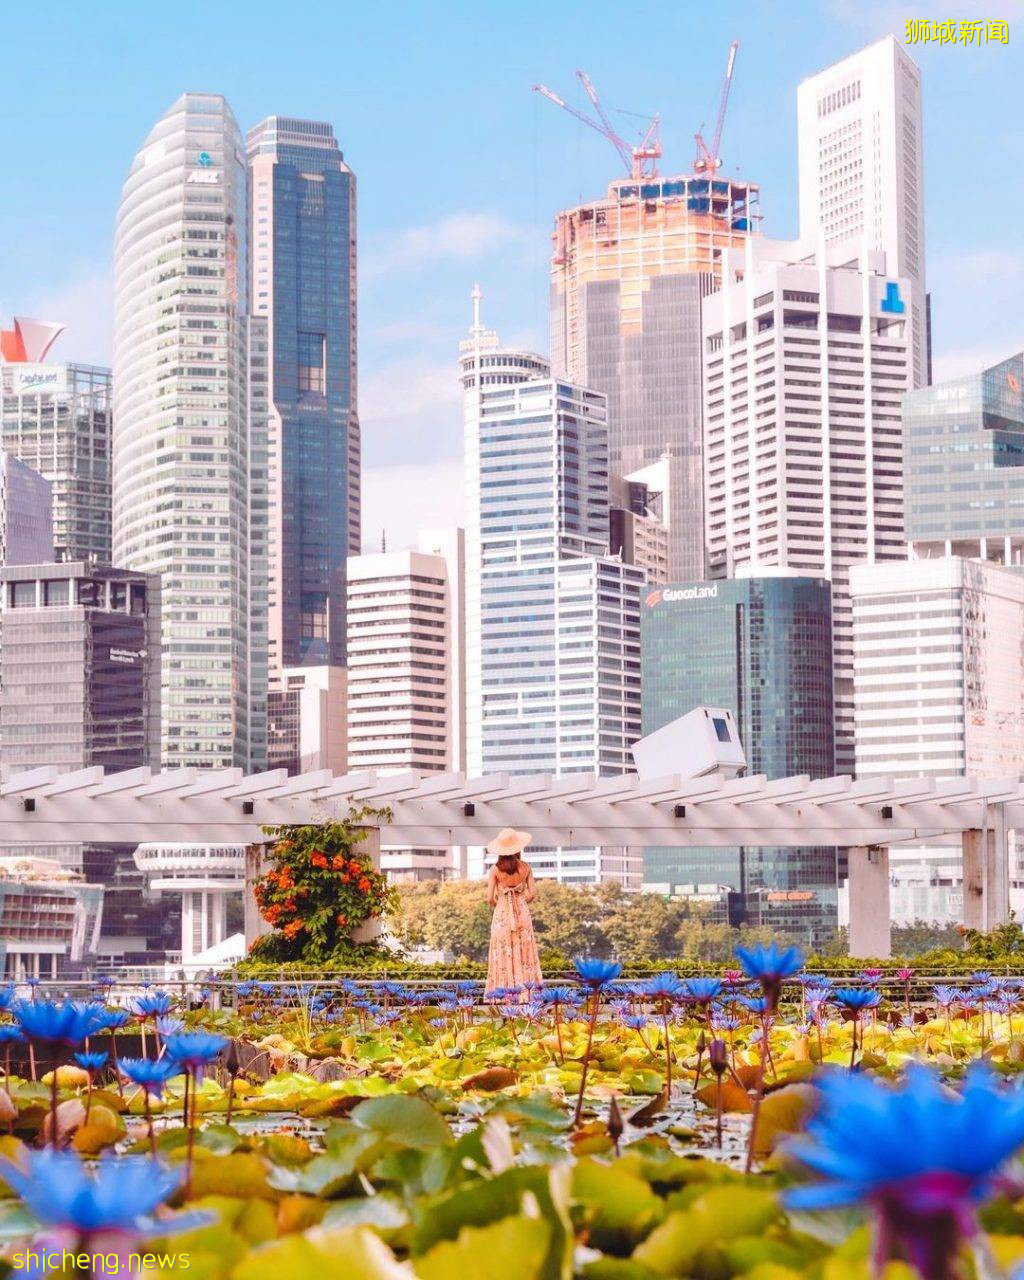 化身花仙子🧚‍♀新加坡9大花海打卡地🌷 天天鮮花盛放、美如仙境，出片率百分百